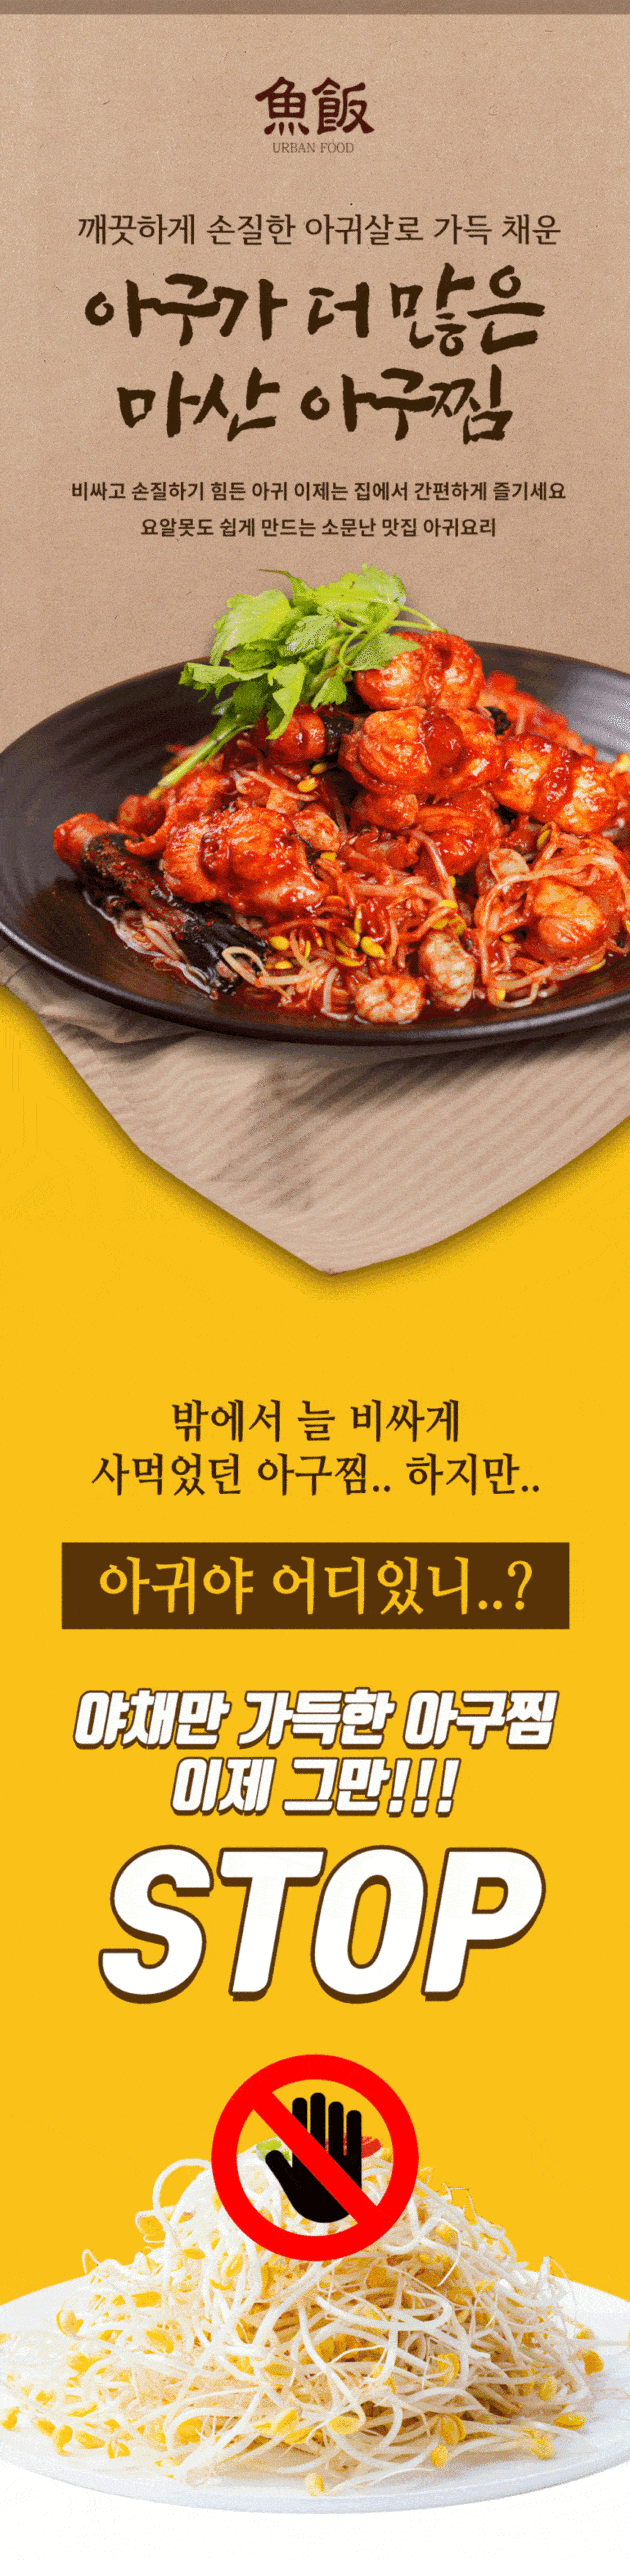 韓國食品-[어반] 마산아구찜 1.37kg